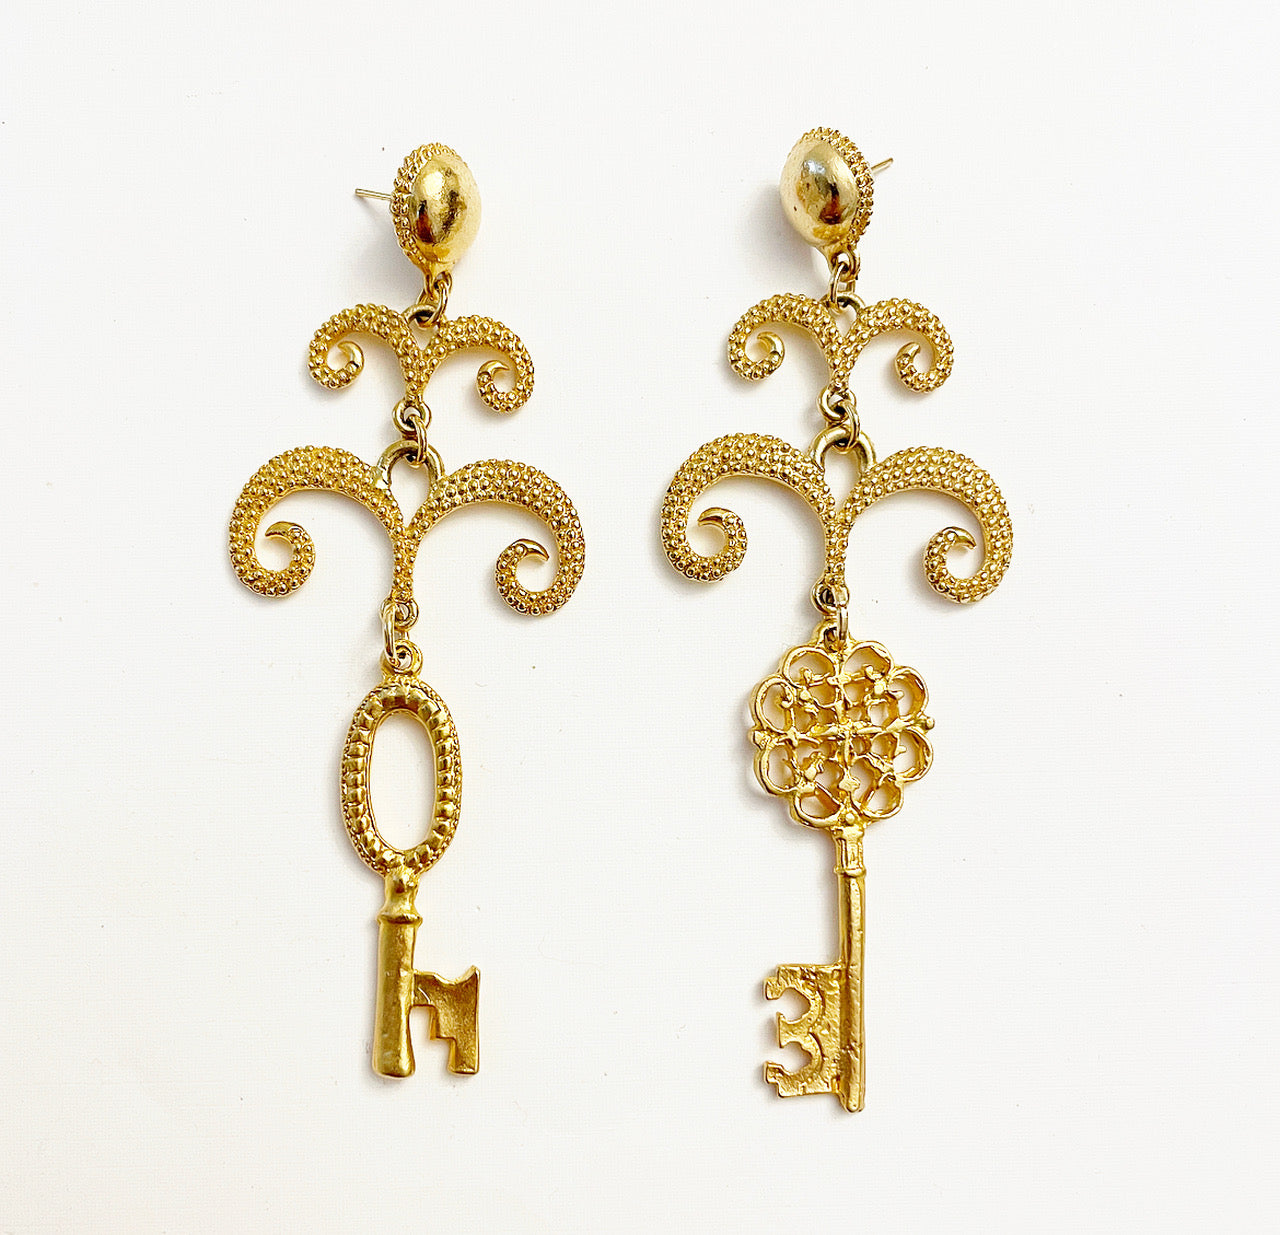 Vintage charm key earrings